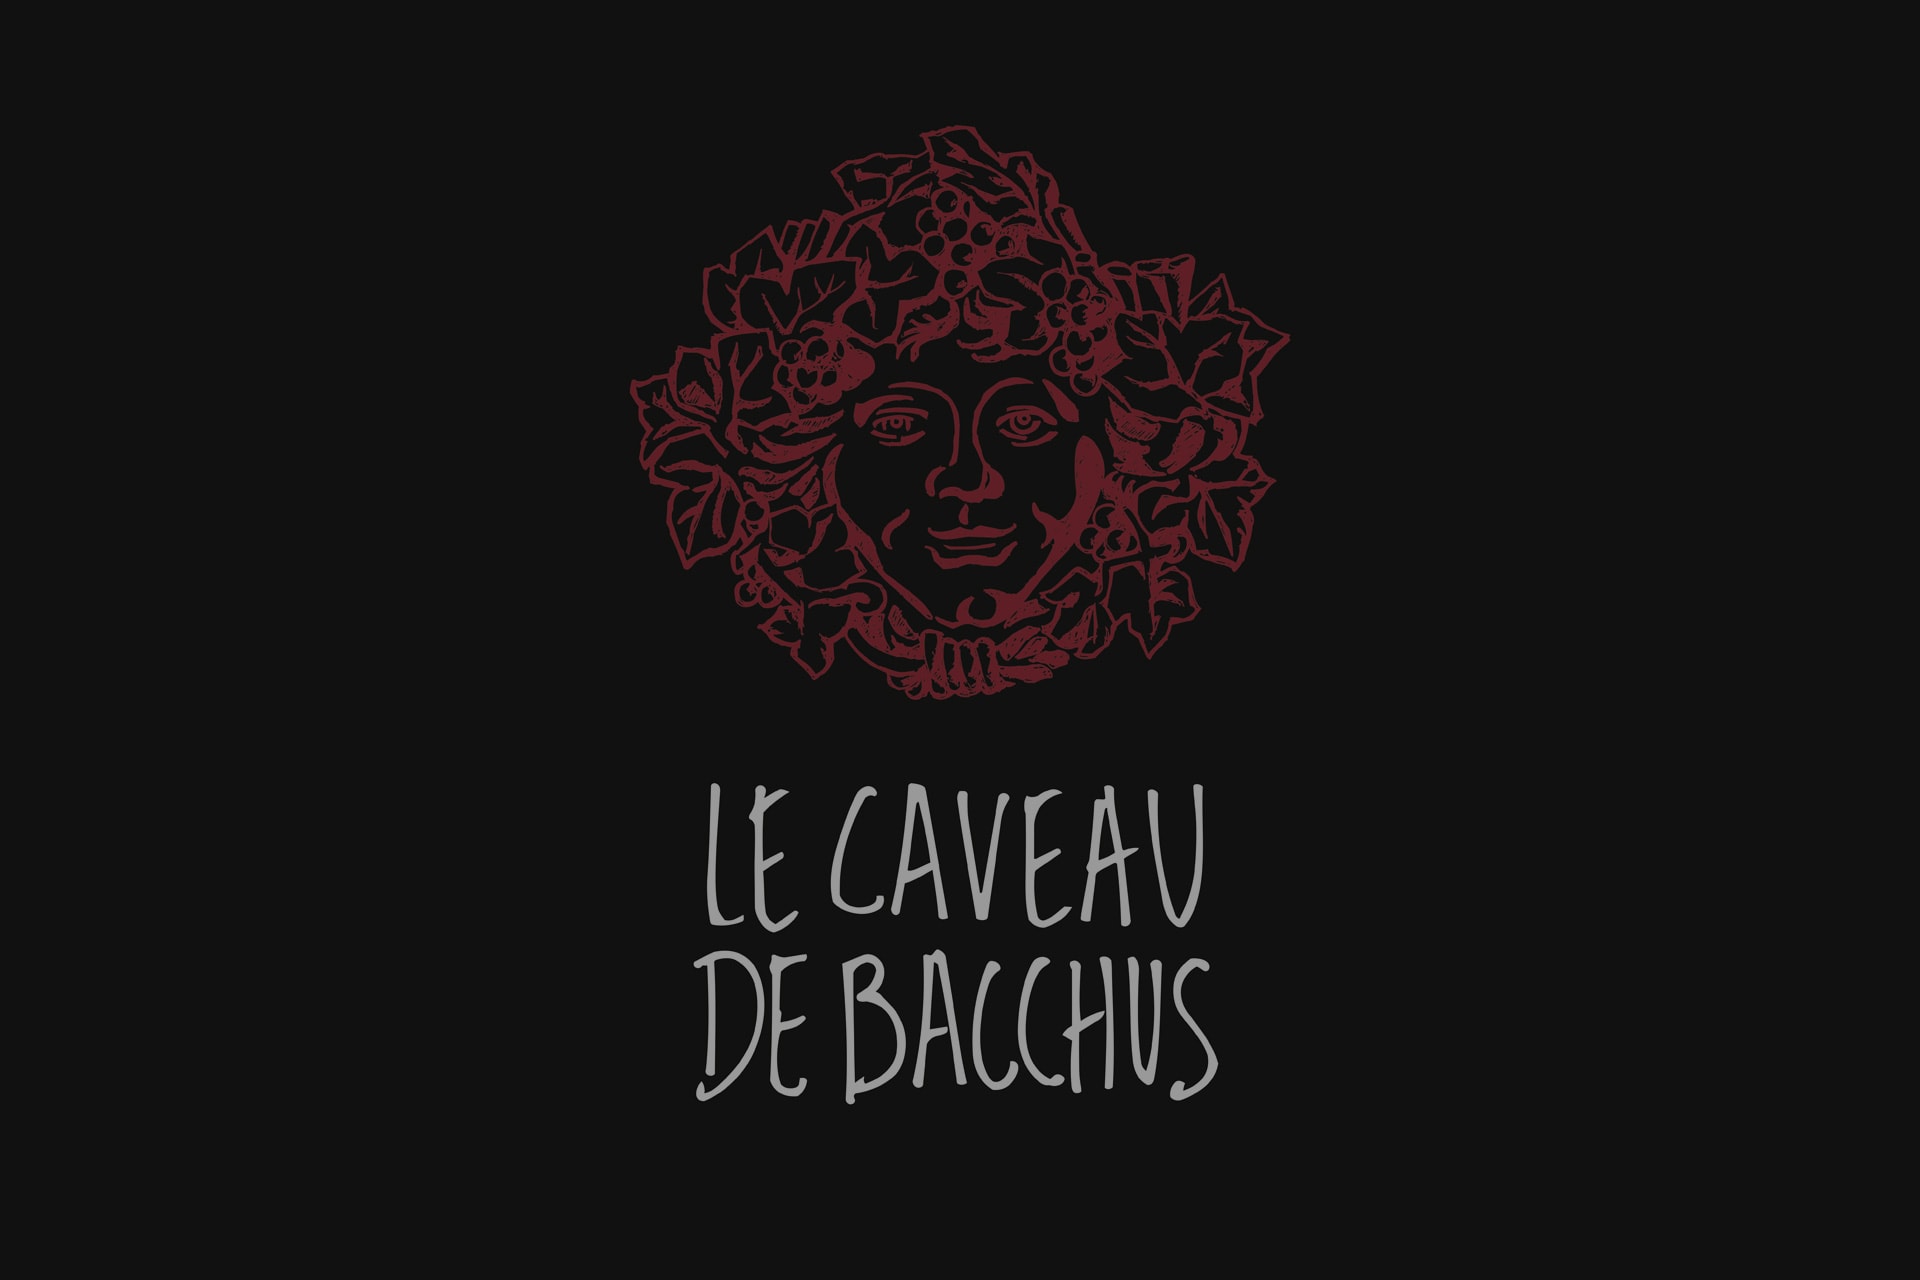 Le Caveau de Bacchus